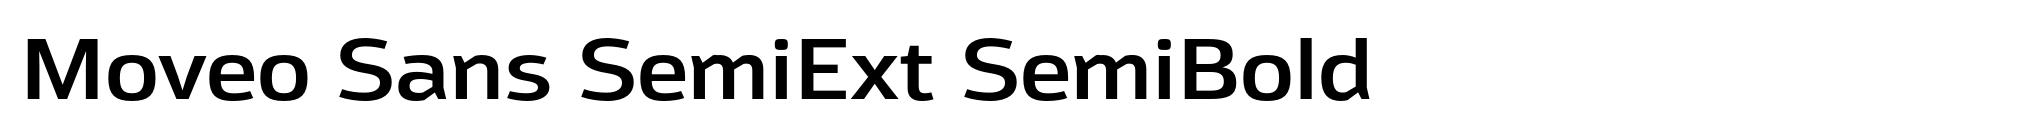 Moveo Sans SemiExt SemiBold image